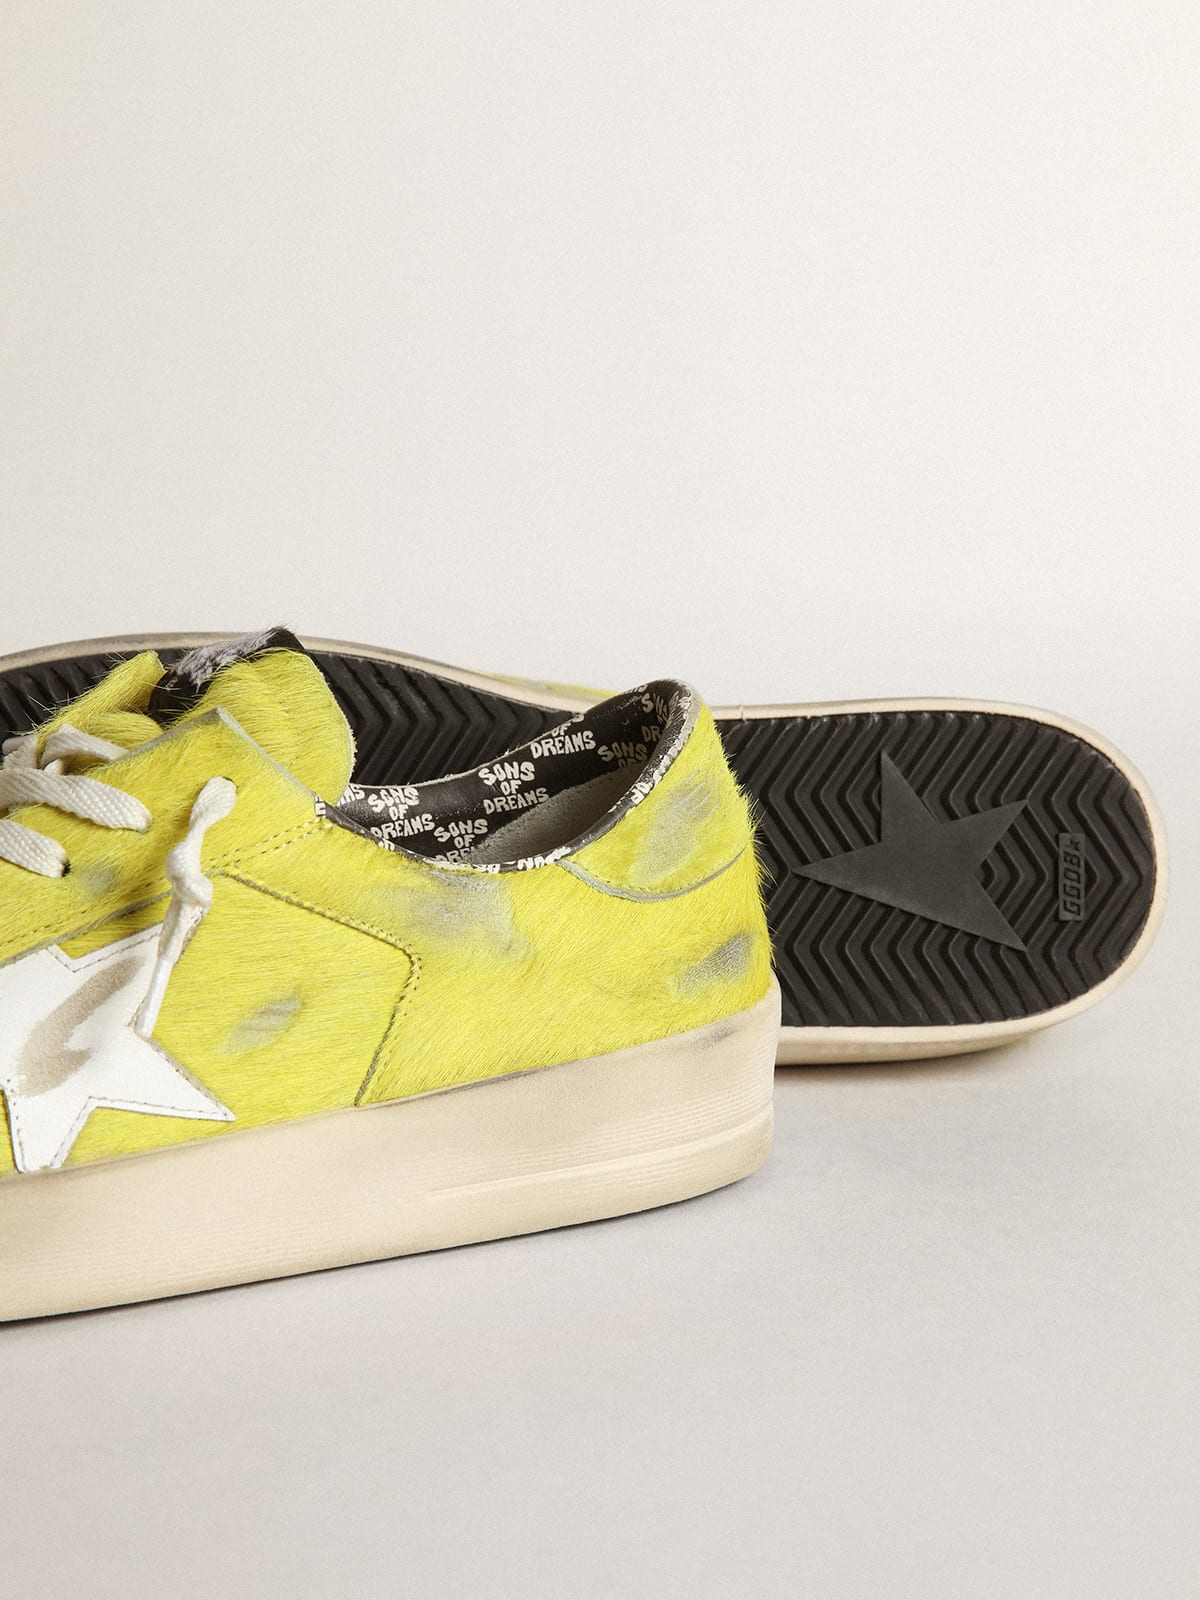 Golden Goose - Sneakers Stardan pour homme en cuir façon poulain jaune fluo avec étoile en cuir blanc in 